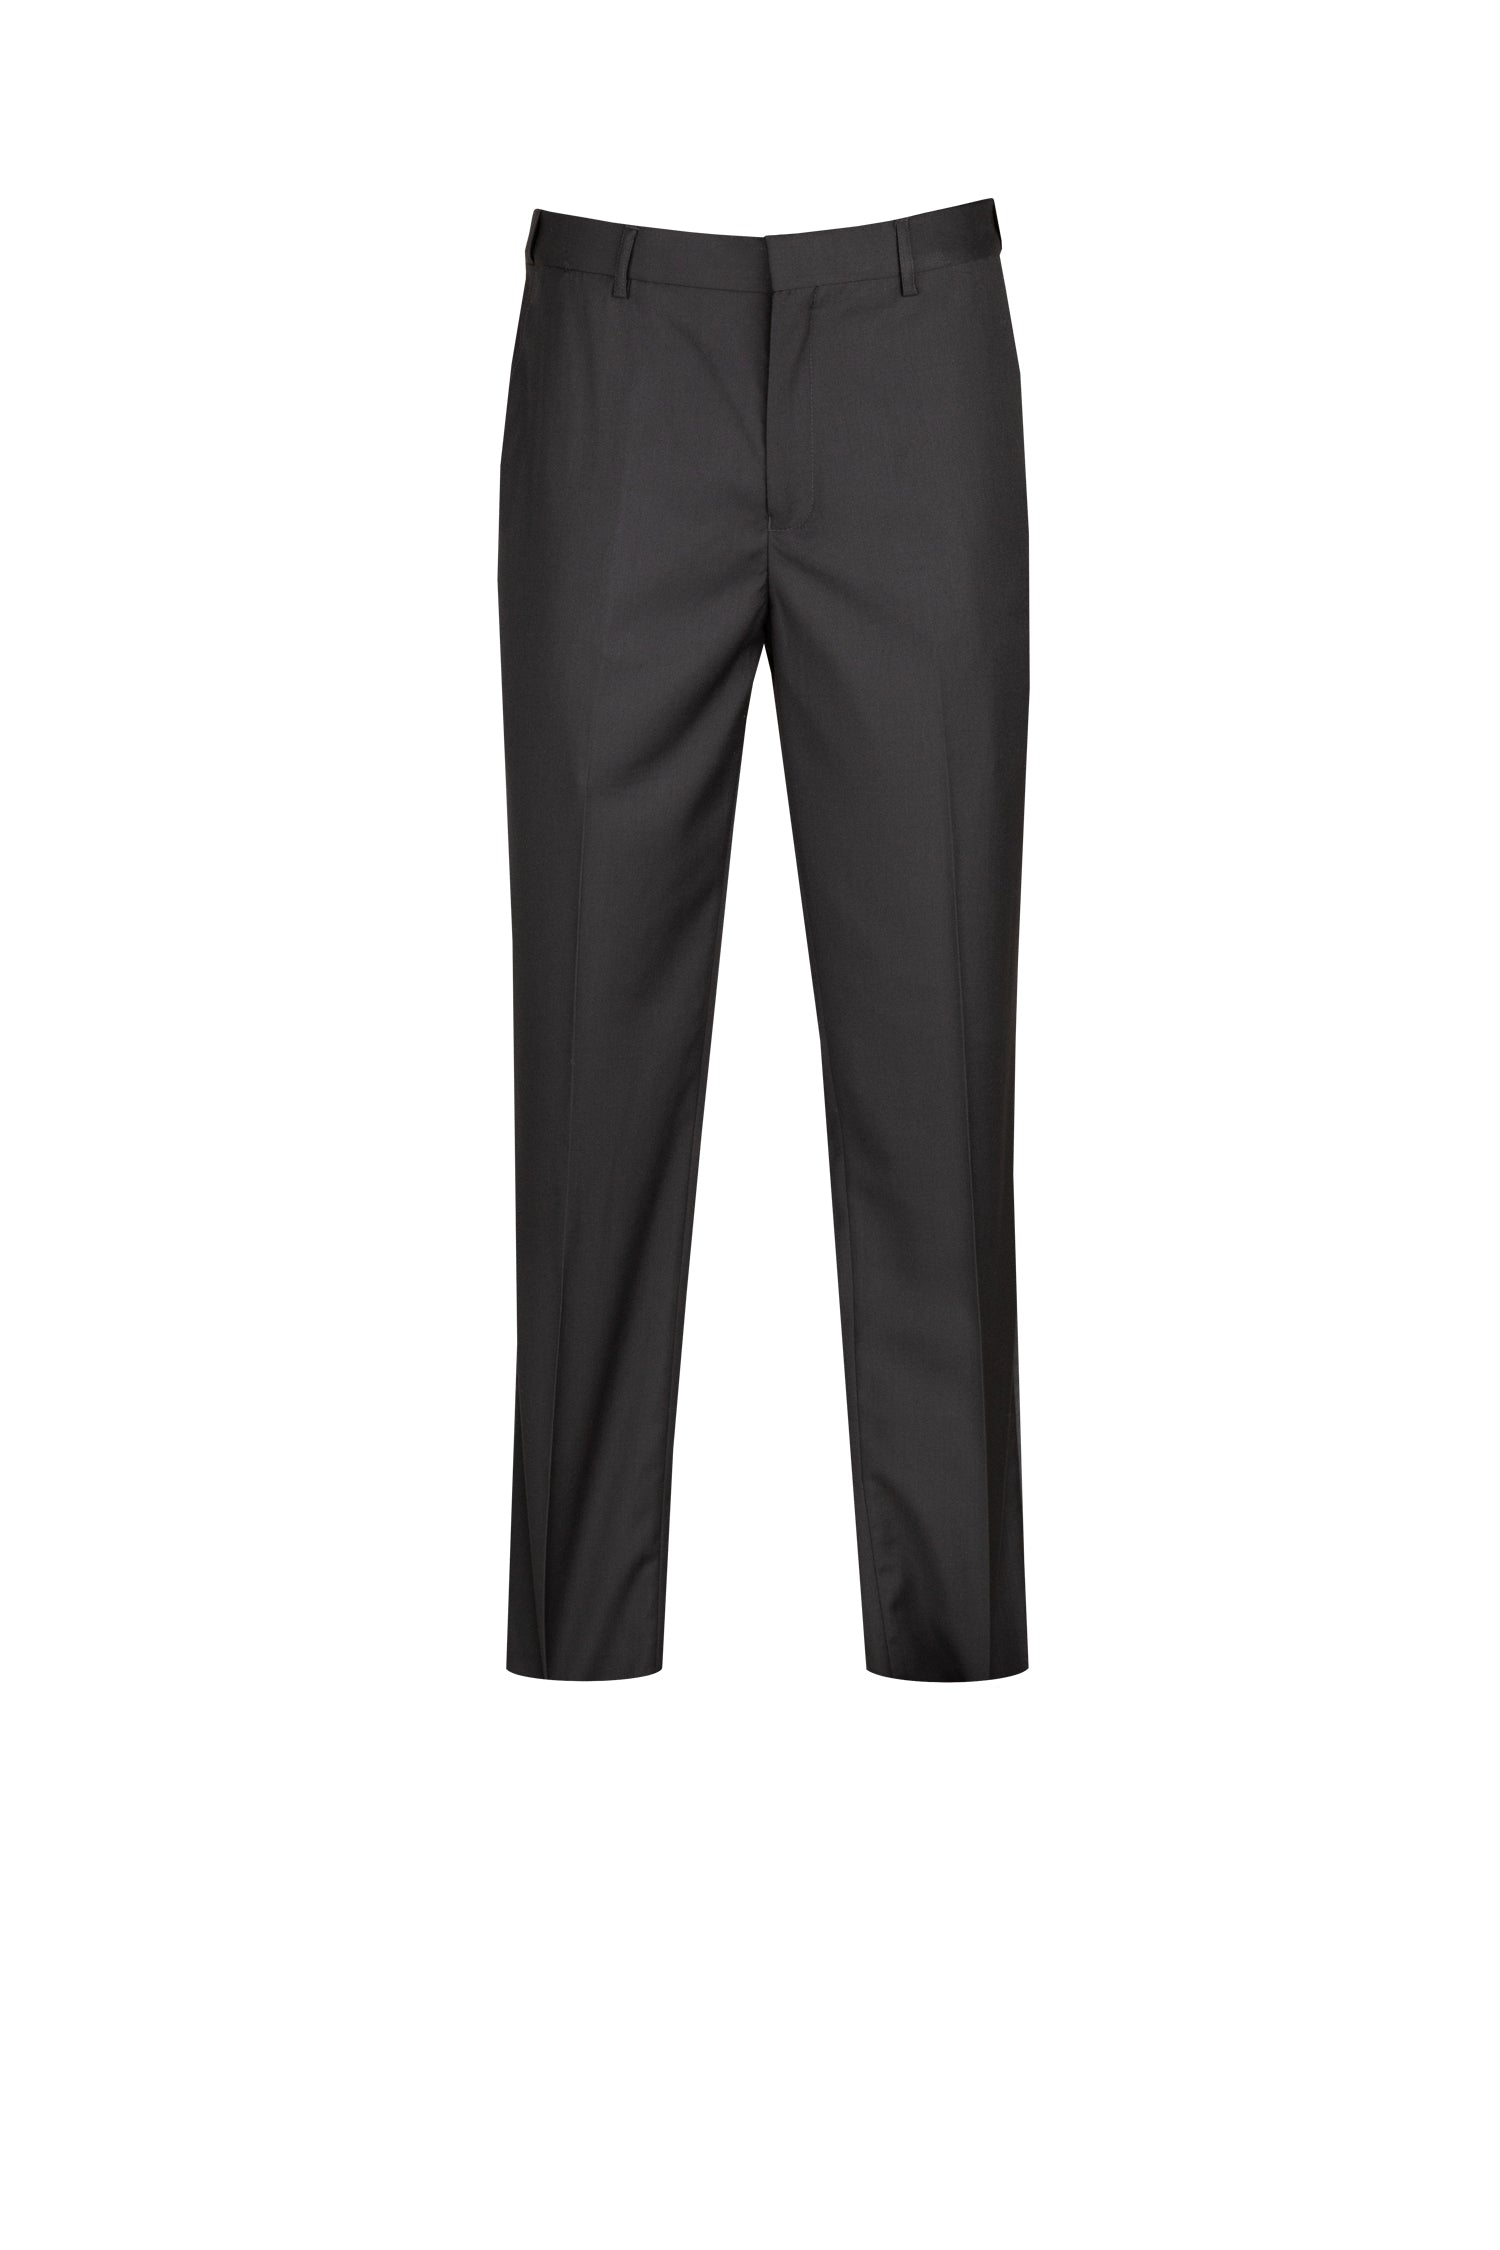 ASOS DESIGN slim suit tuxedo pants in premium fabric in black | ASOS